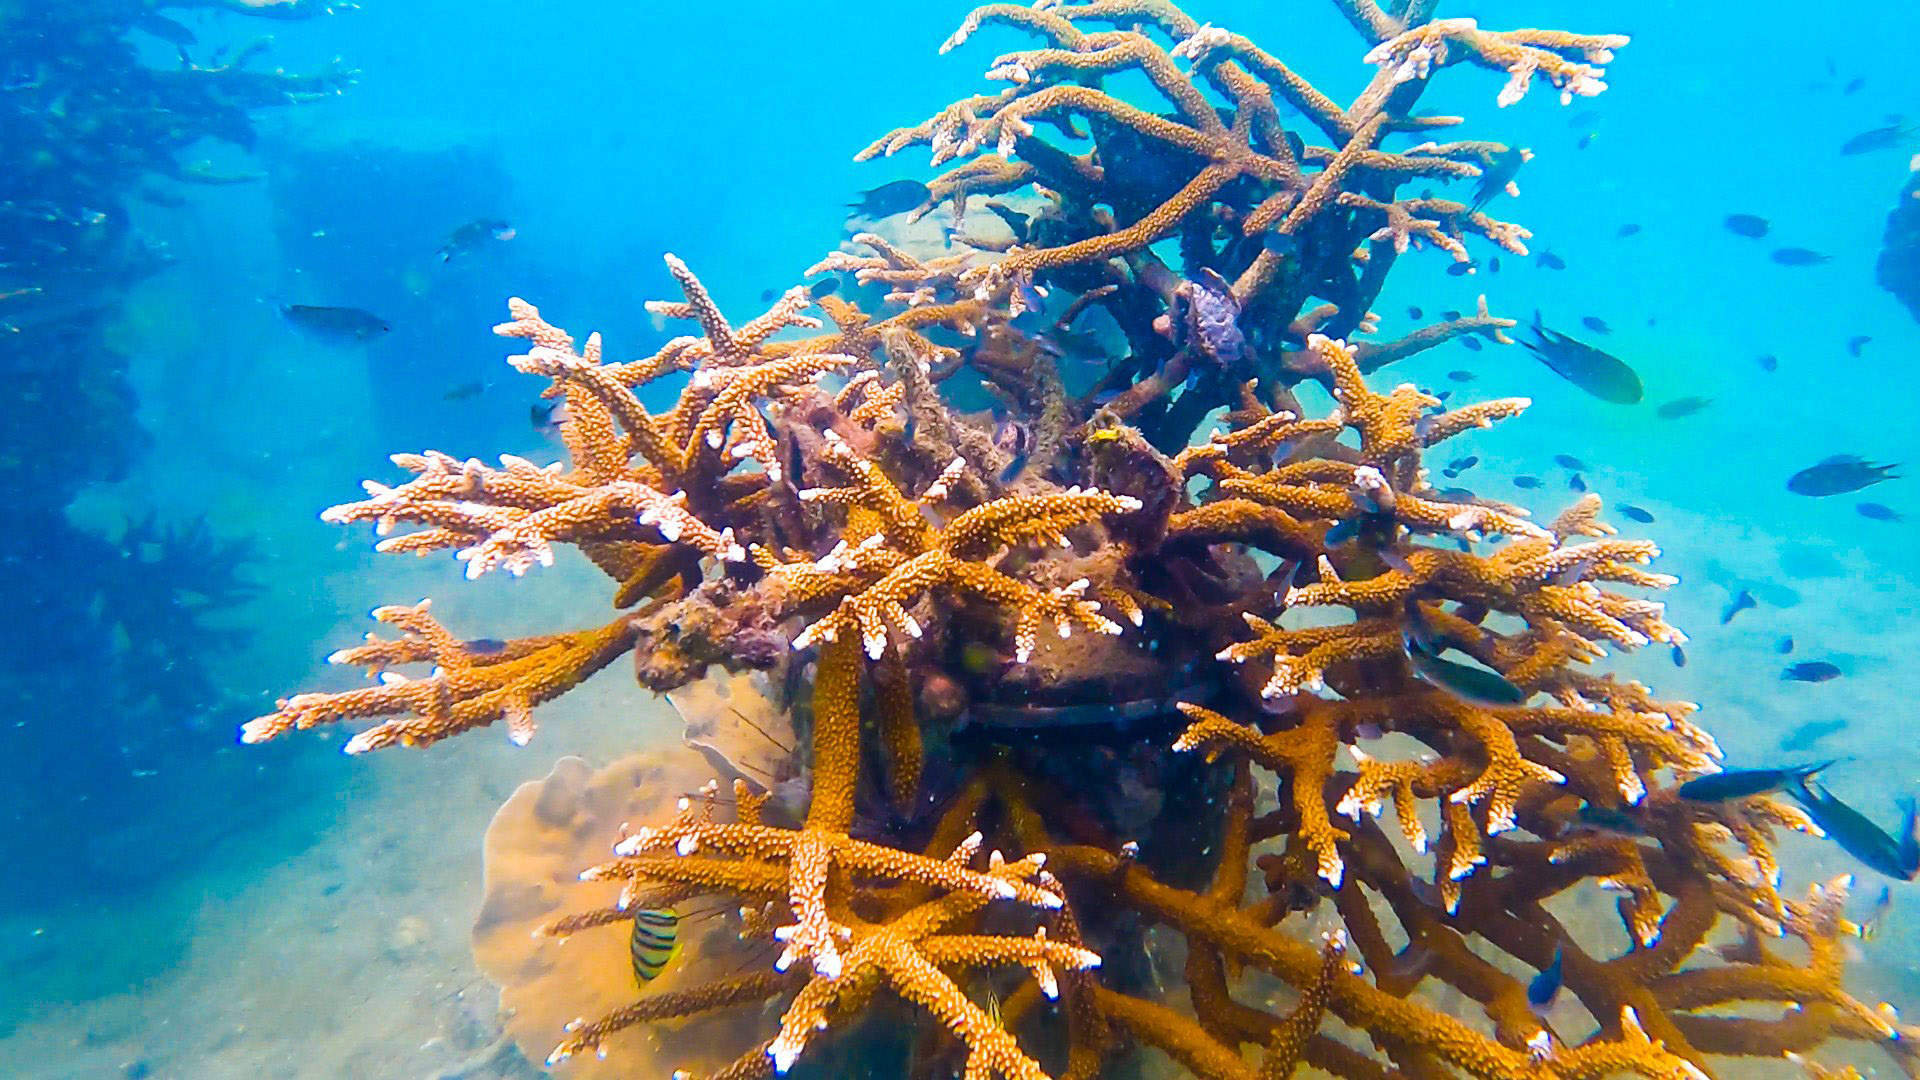 Khu san hô nhân tạo sở hữu nhiều loại san hô đặc sắc và các loài sinh vật biển phong phú. Tận hưởng kỳ nghỉ thú vị với đầy đủ các hoạt động như lặn biển, đi tàu thuyền và khám phá đáy biển. Bạn sẽ không thể bỏ qua cơ hội tuyệt vời này.